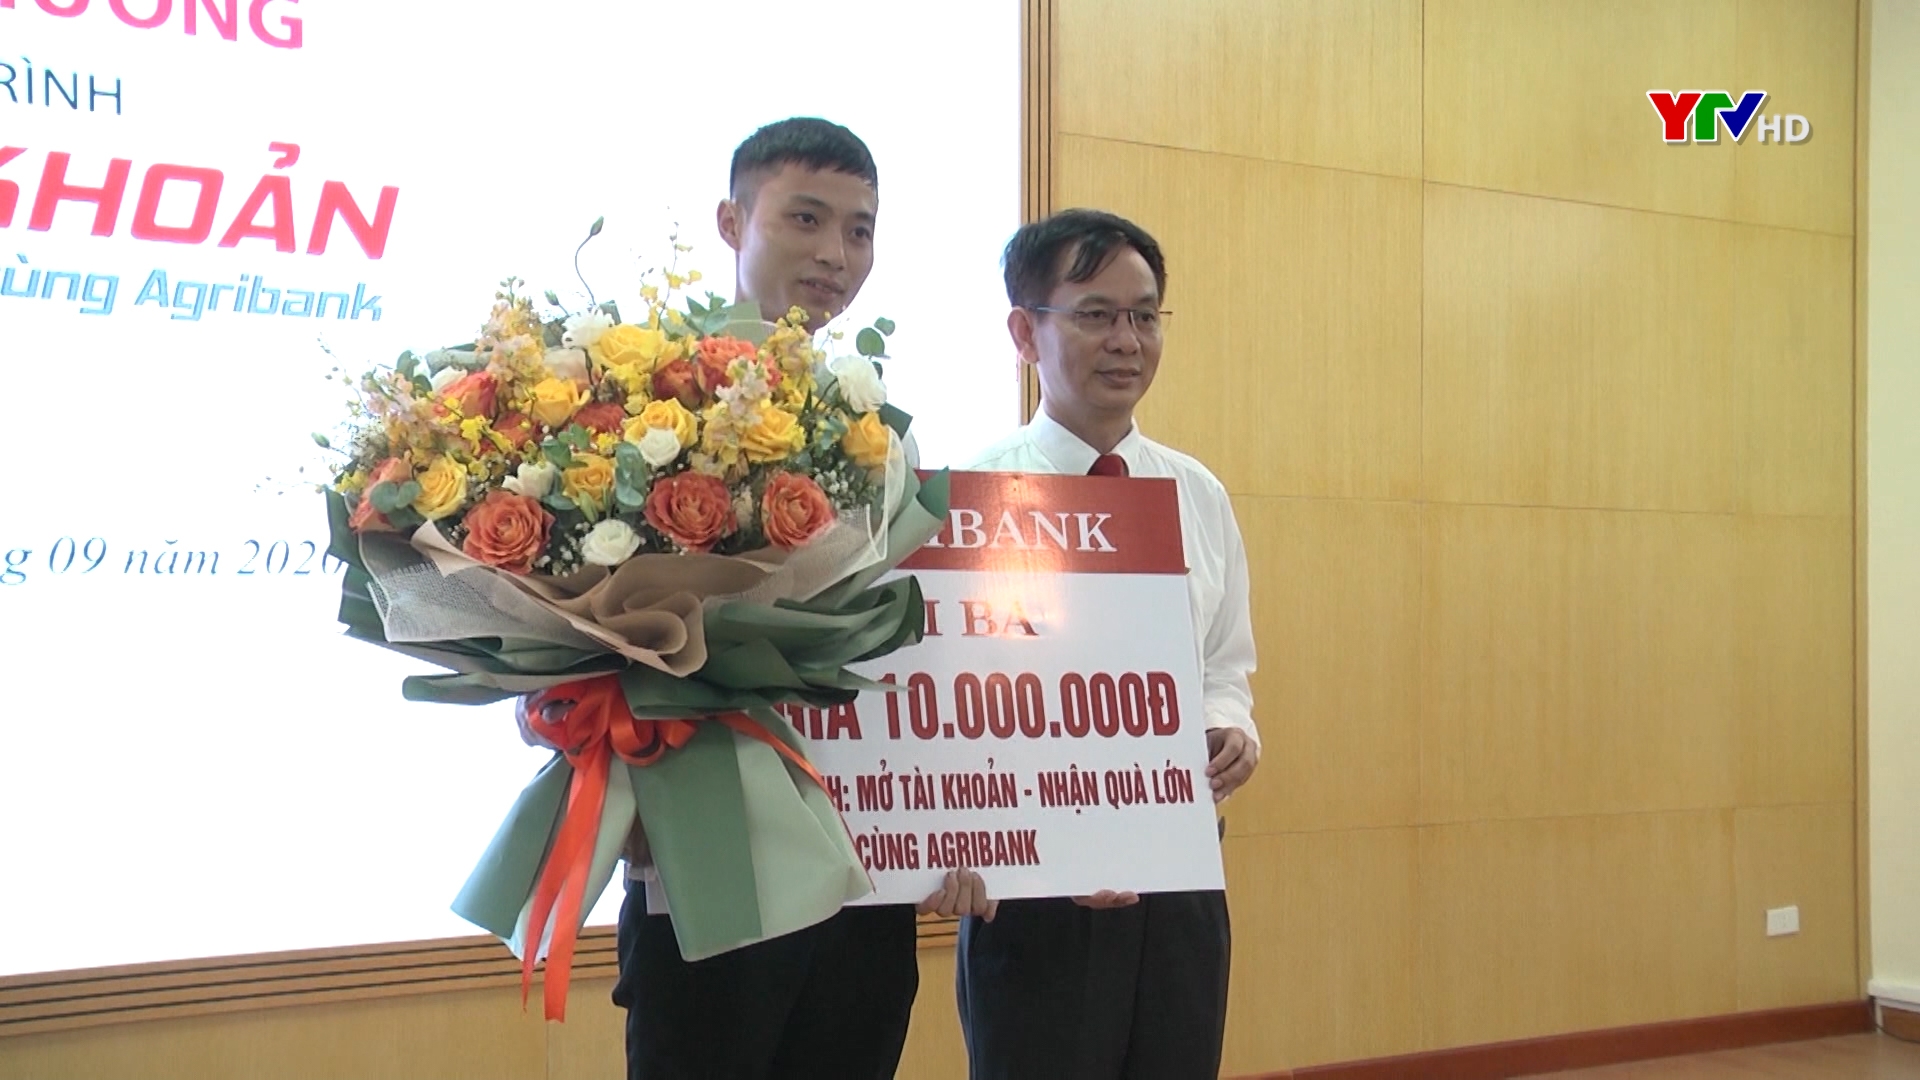 Trao thưởng chương trình khuyến mại mở tài khoản nhận quà lớn cùng Agribank